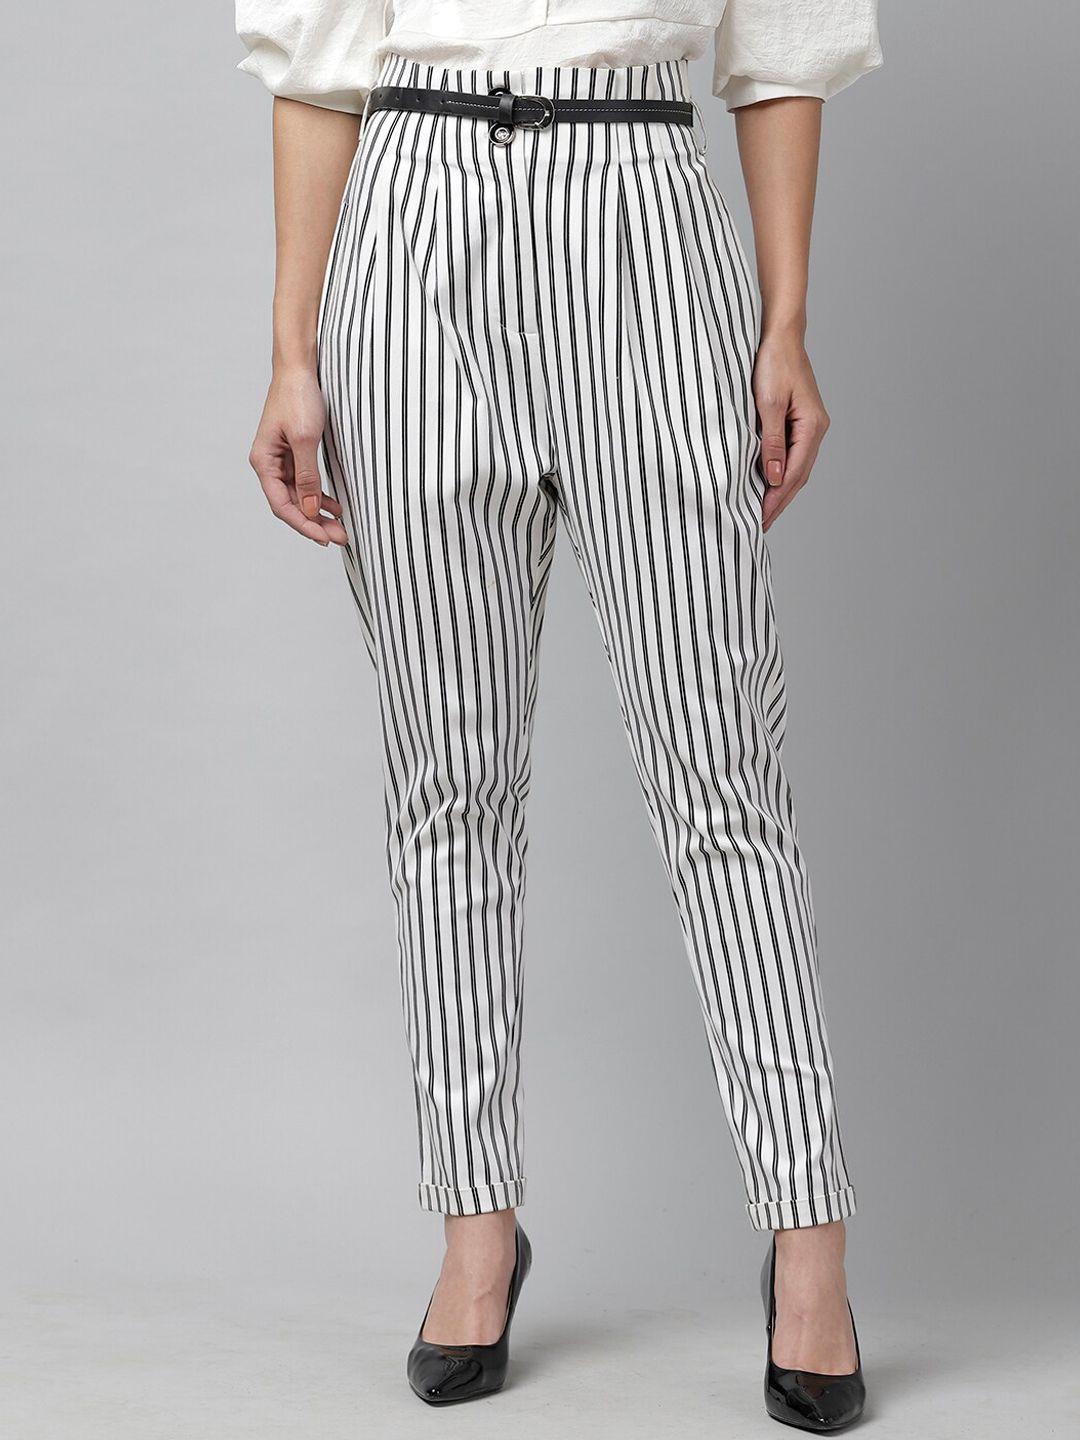 kassually women black & white slim fit striped regular trousers